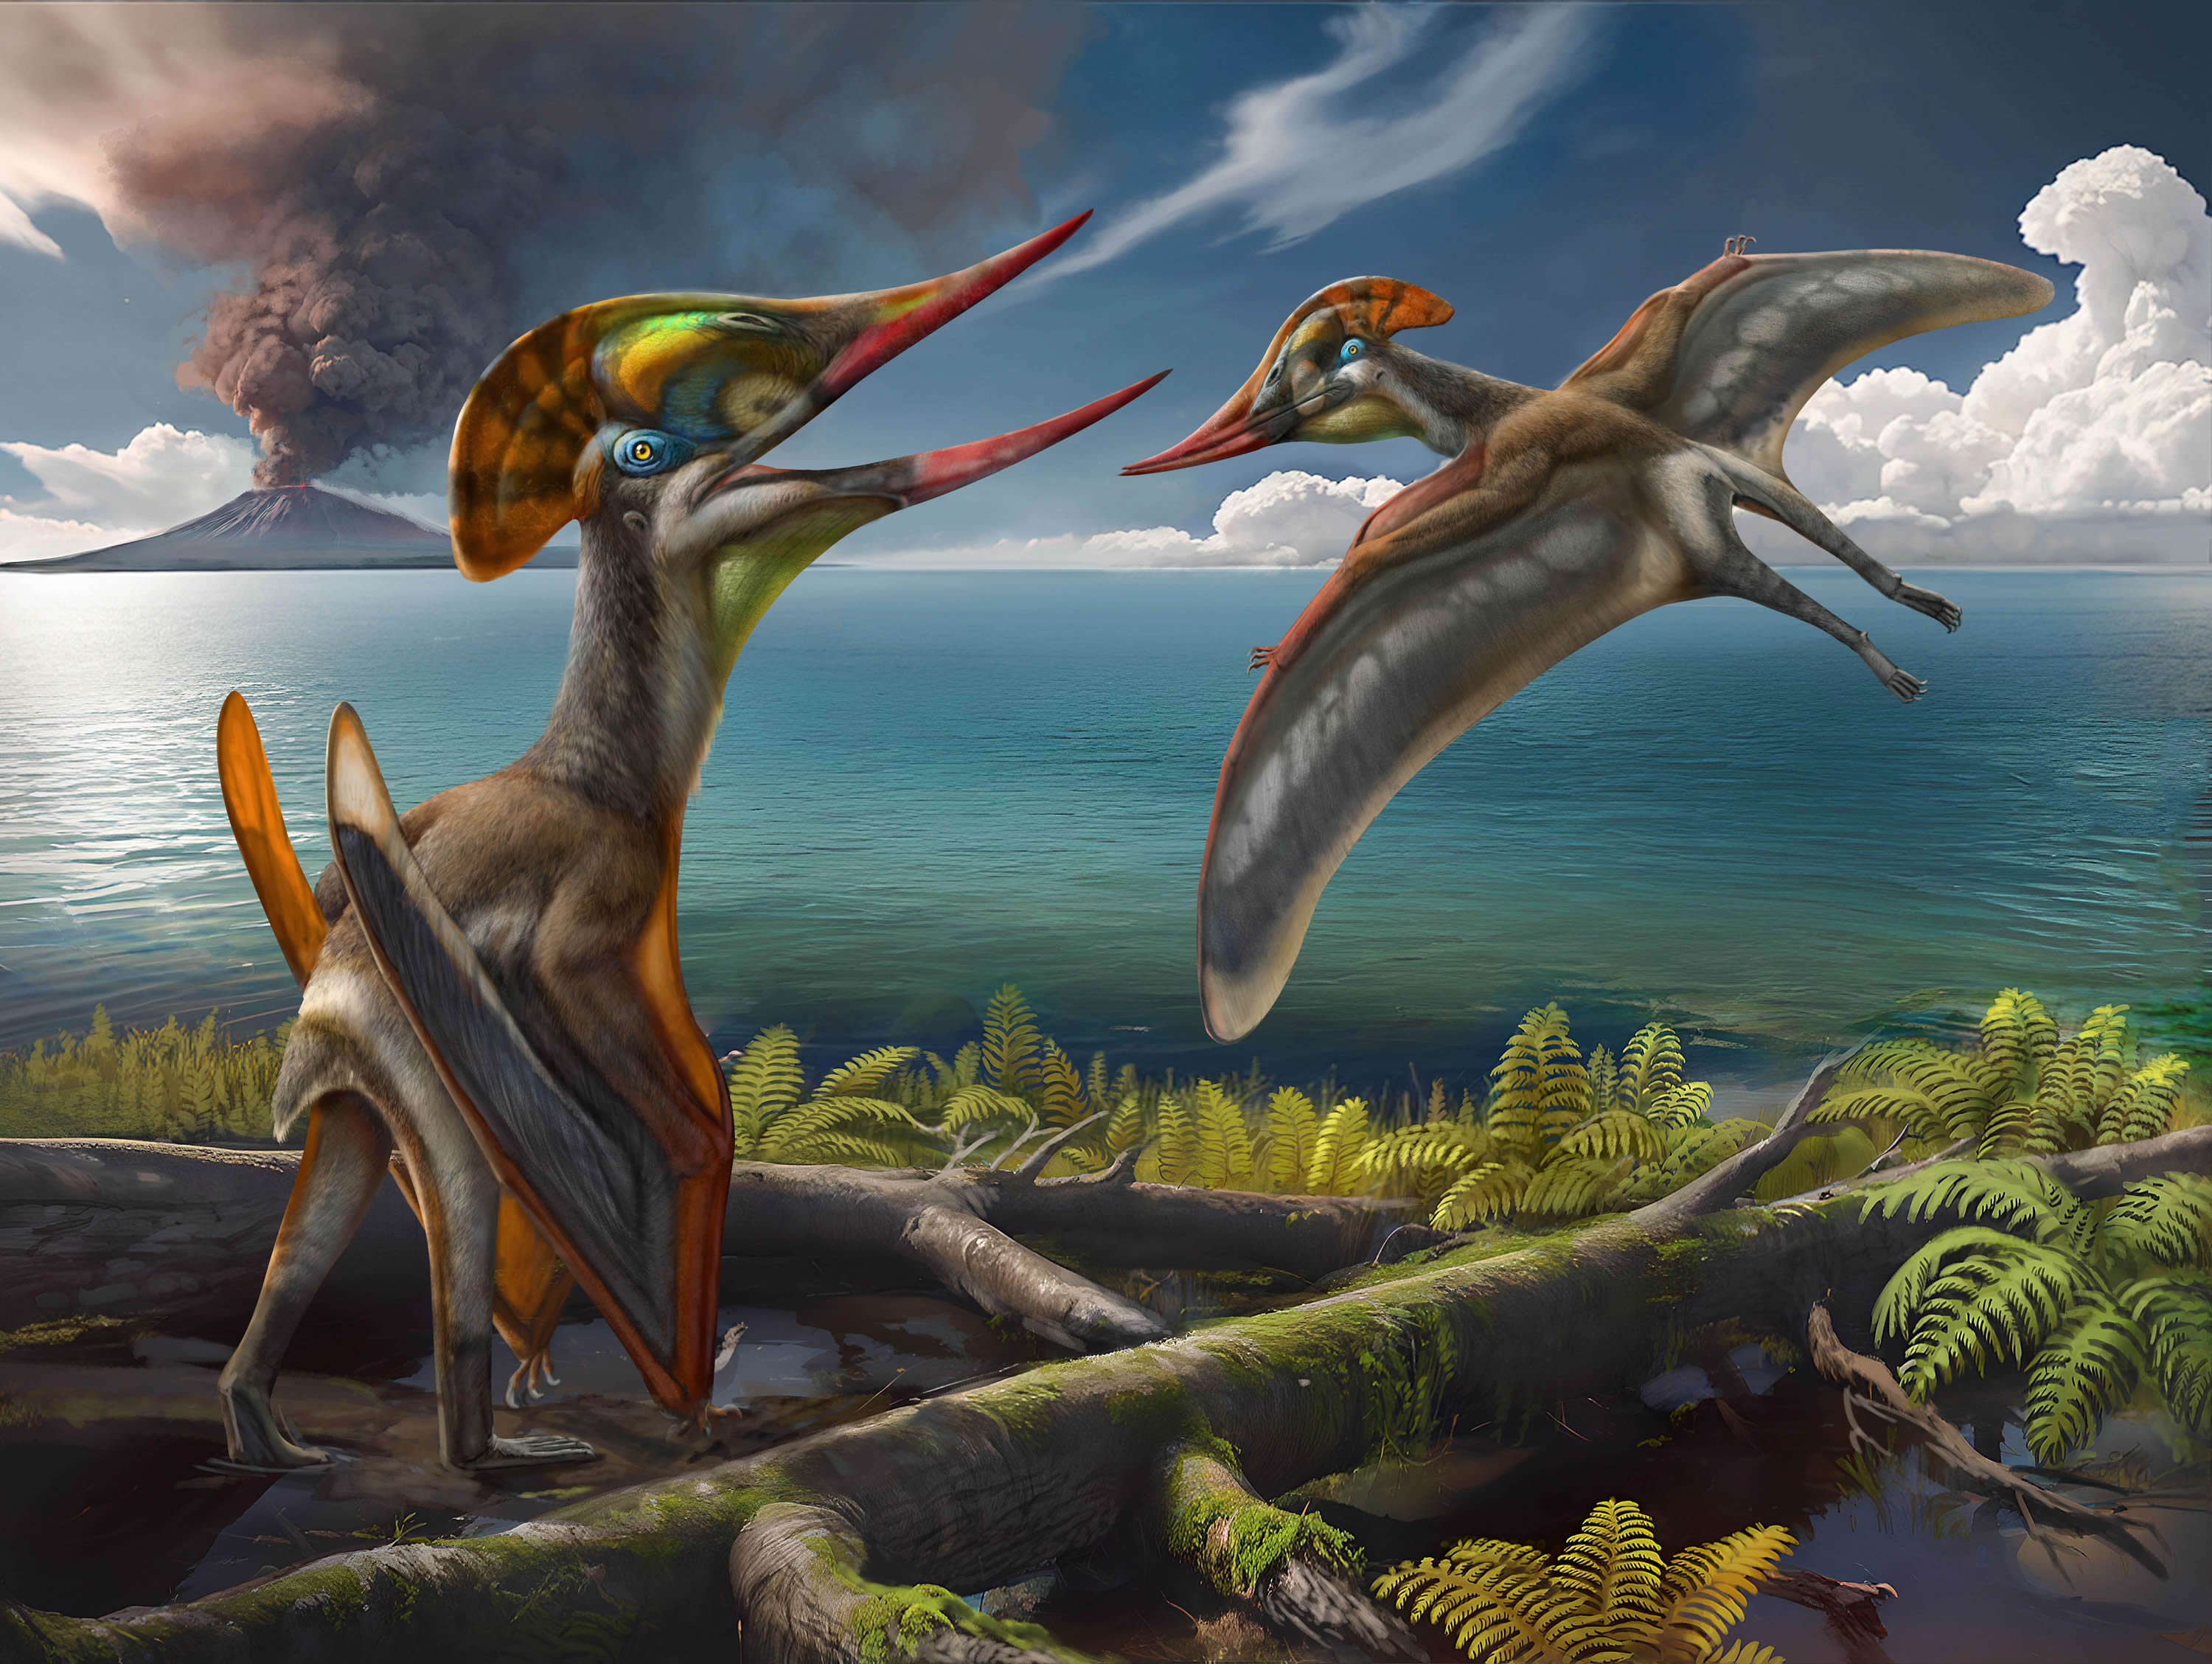 翼龙新种被命名“友好美丽飞龙”以纪念中巴合作- 化石网